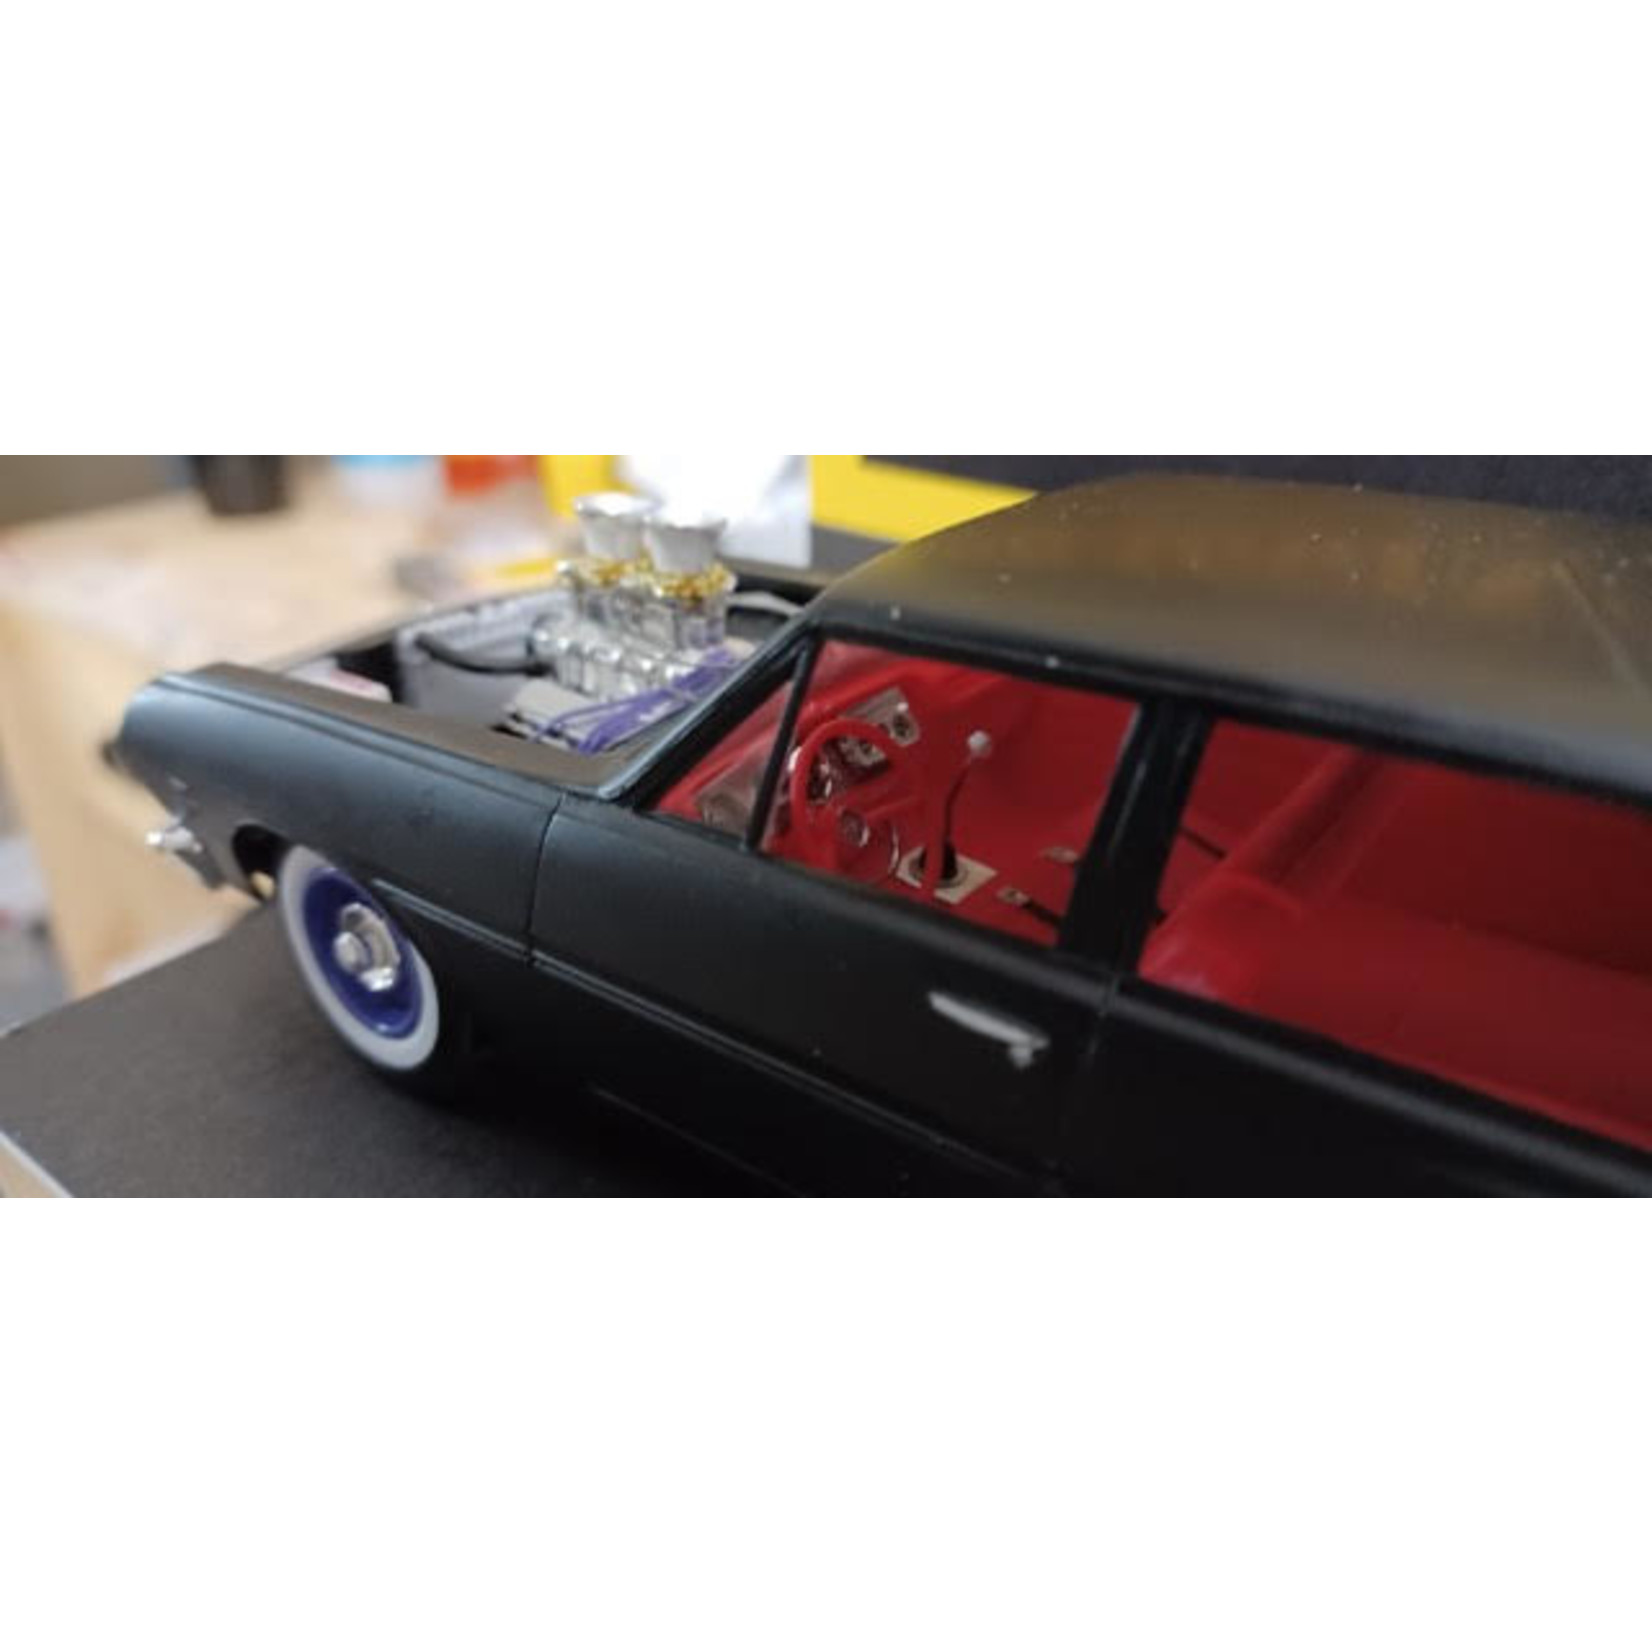 1966 Chevelle Draggin' Wagon by Robert Berreth